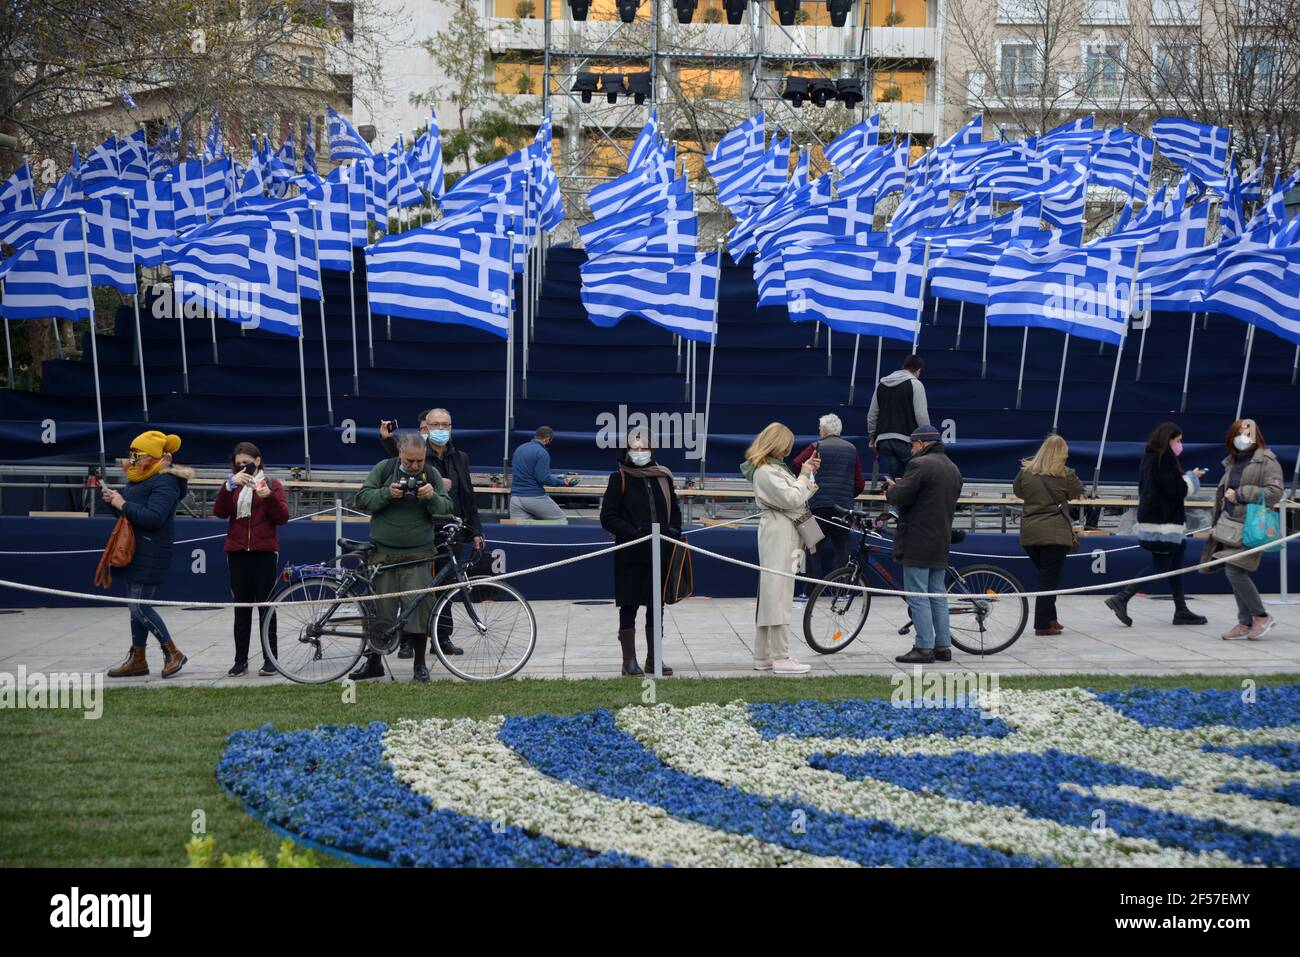 Banderas griegas colocadas en la Plaza Syntagma antes de las celebraciones del día Bicentenario de la Independencia. Atenas, Grecia, 24 de marzo de 2021. Crédito: Dimitris Aspiotis Foto de stock